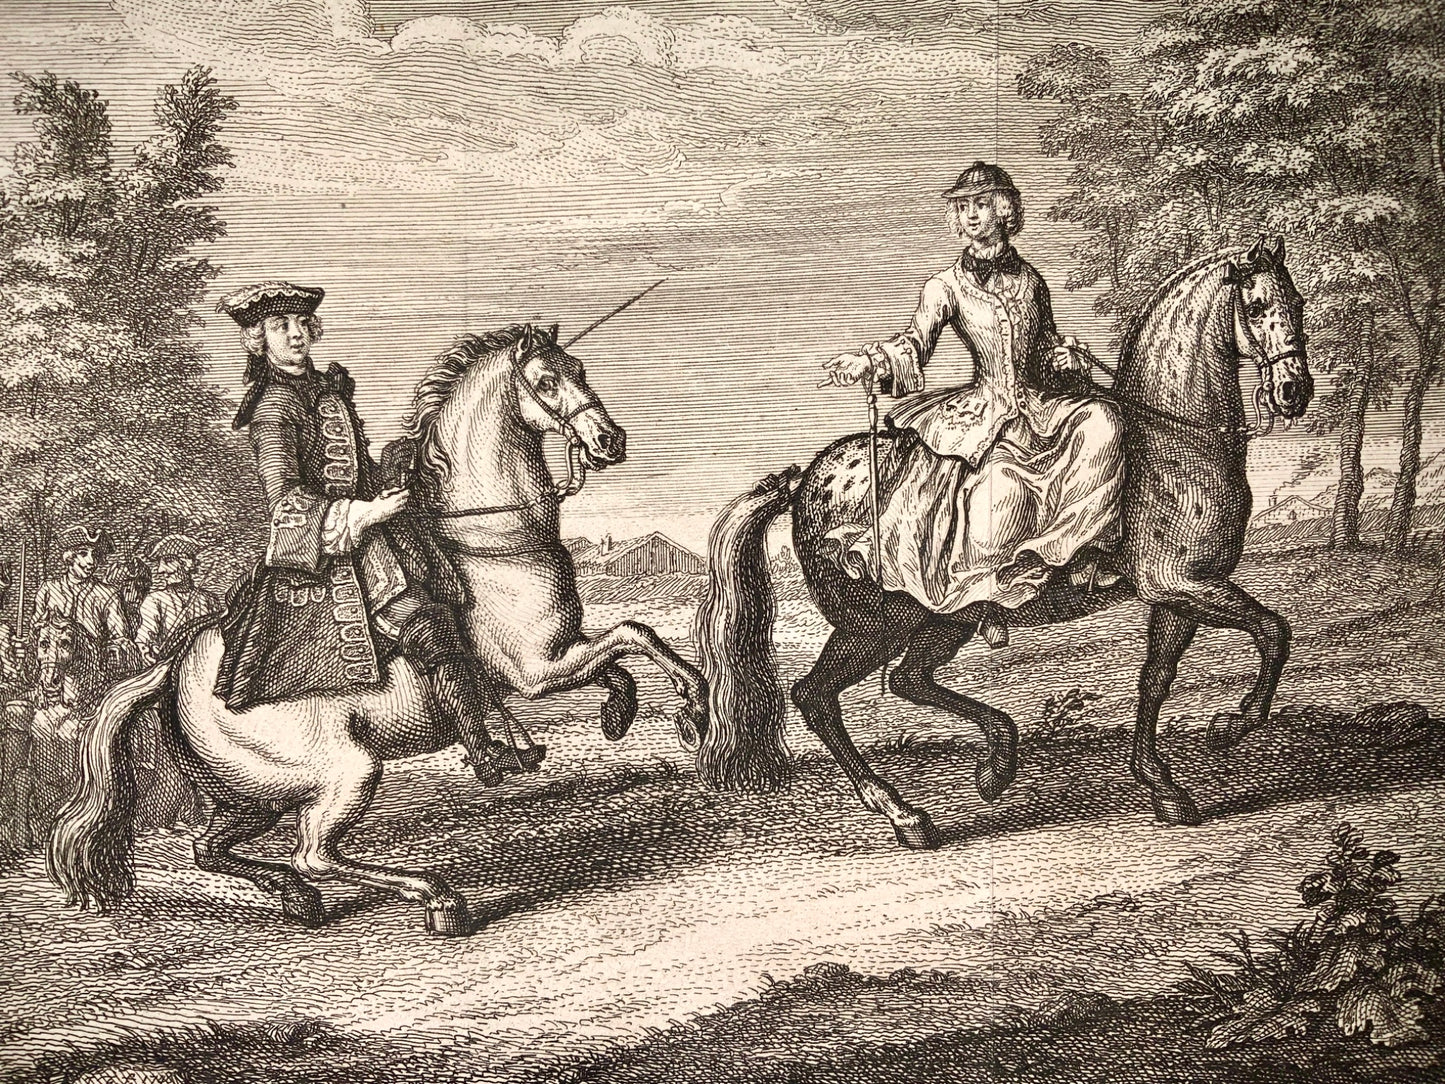 1752 J. R. Rindinger (after) - Arrret au Pause EQUESTRIAN Dressage - engraving